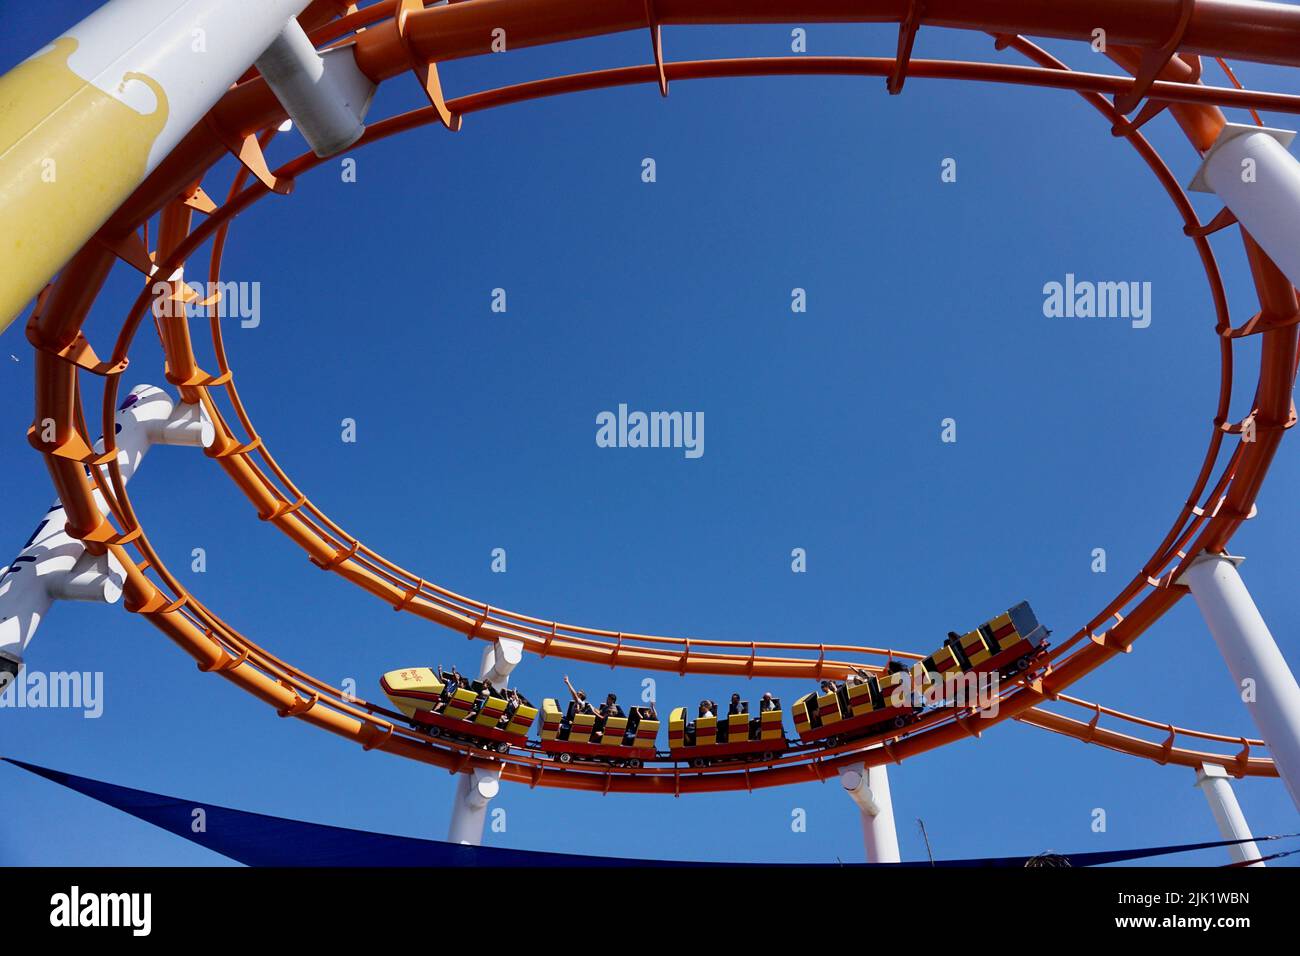 Pacific Park amusement park on the Santa Monica pier. Stock Photo